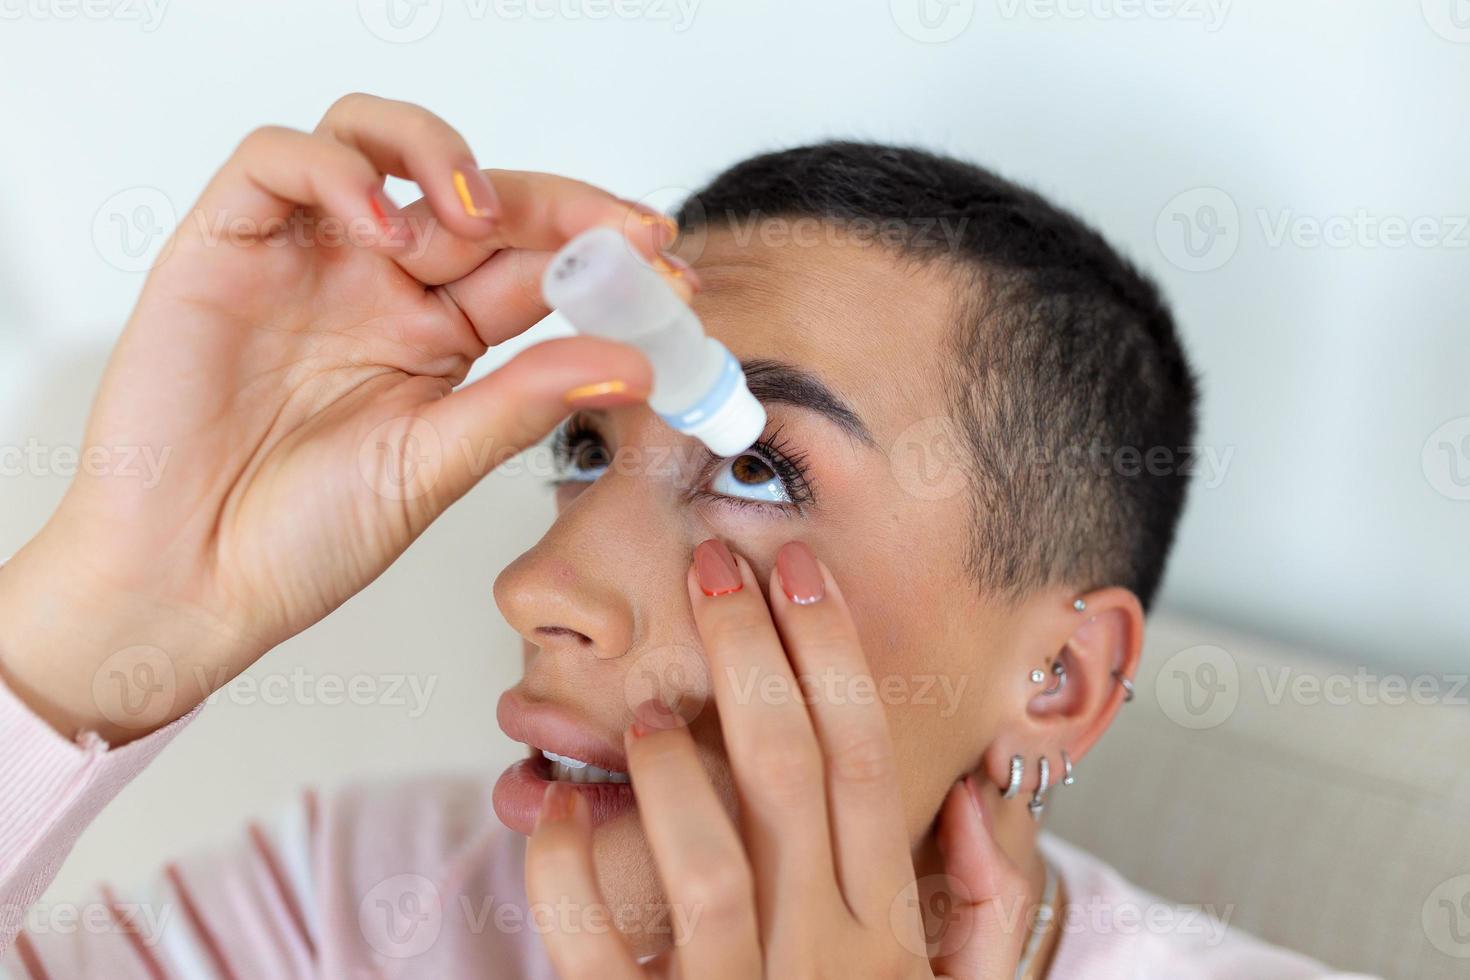 femme en utilisant œil goutte, femme goutte œil lubrifiant à traiter sec œil ou allergie, malade femme traiter globe oculaire irritation ou inflammation femme Souffrance de irrité œil, optique symptômes photo